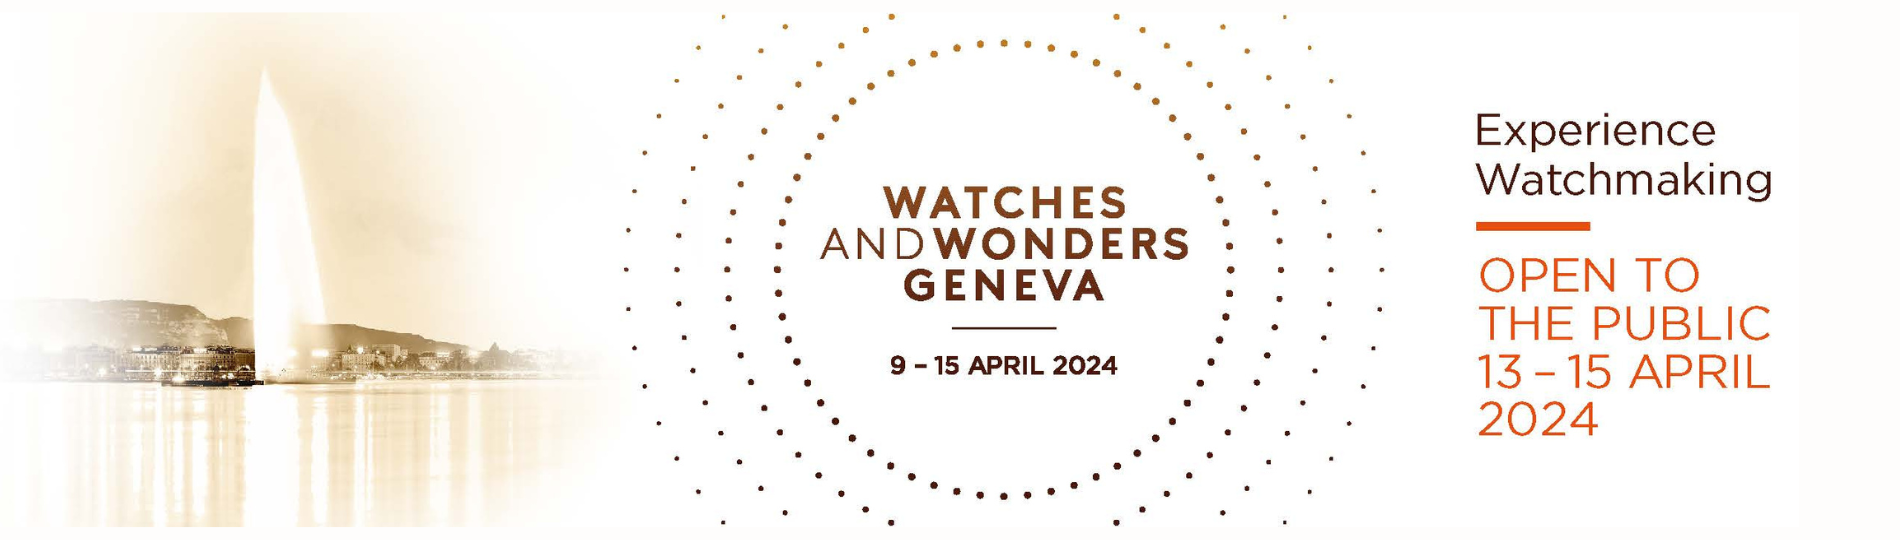 WATCHES AND WONDERS GENEVA 2024